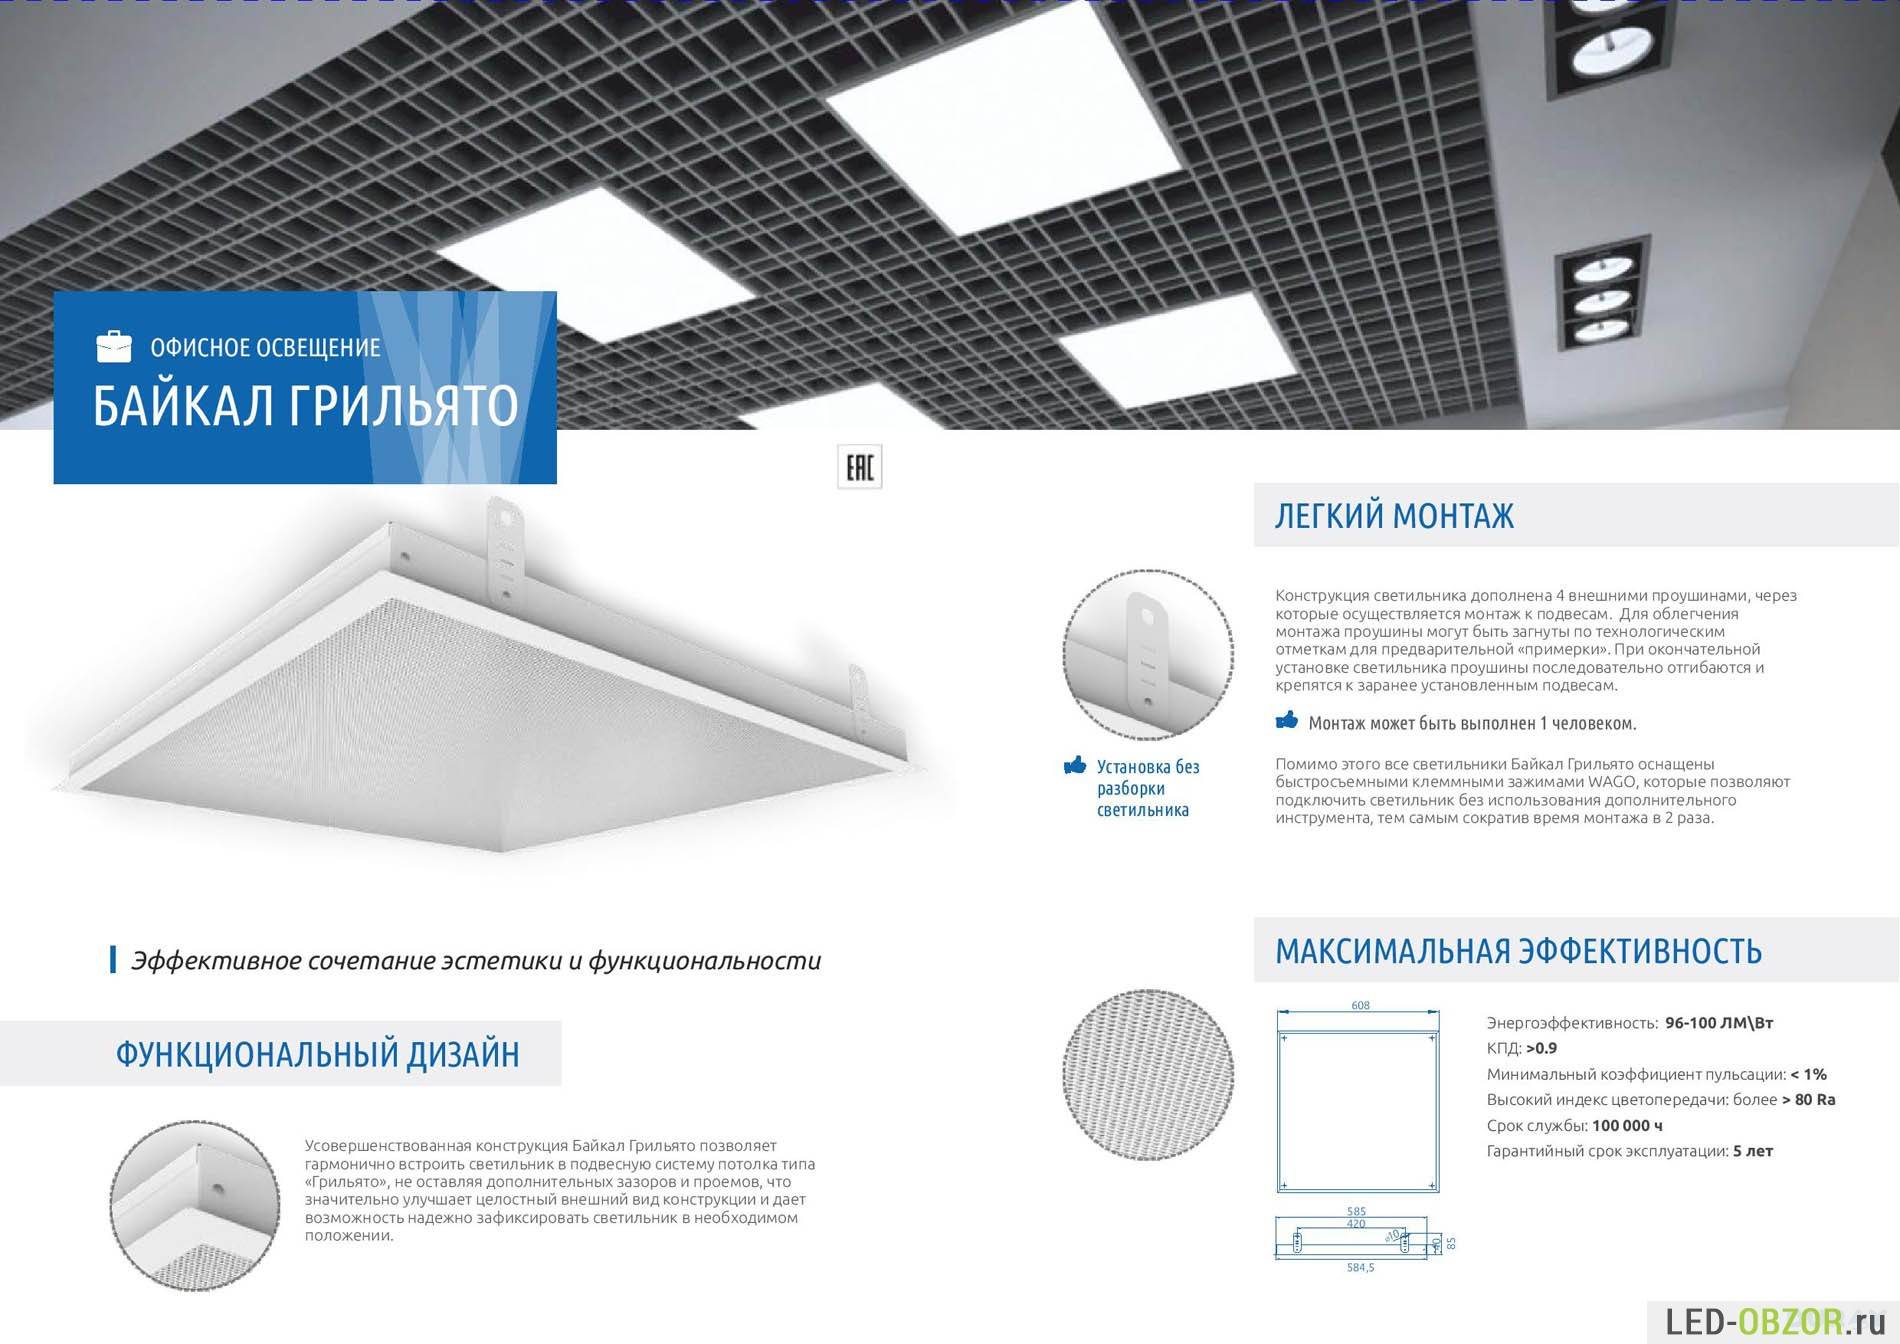 Светильники для потолка «грильято»: правила монтажа и преимущества led-технологии